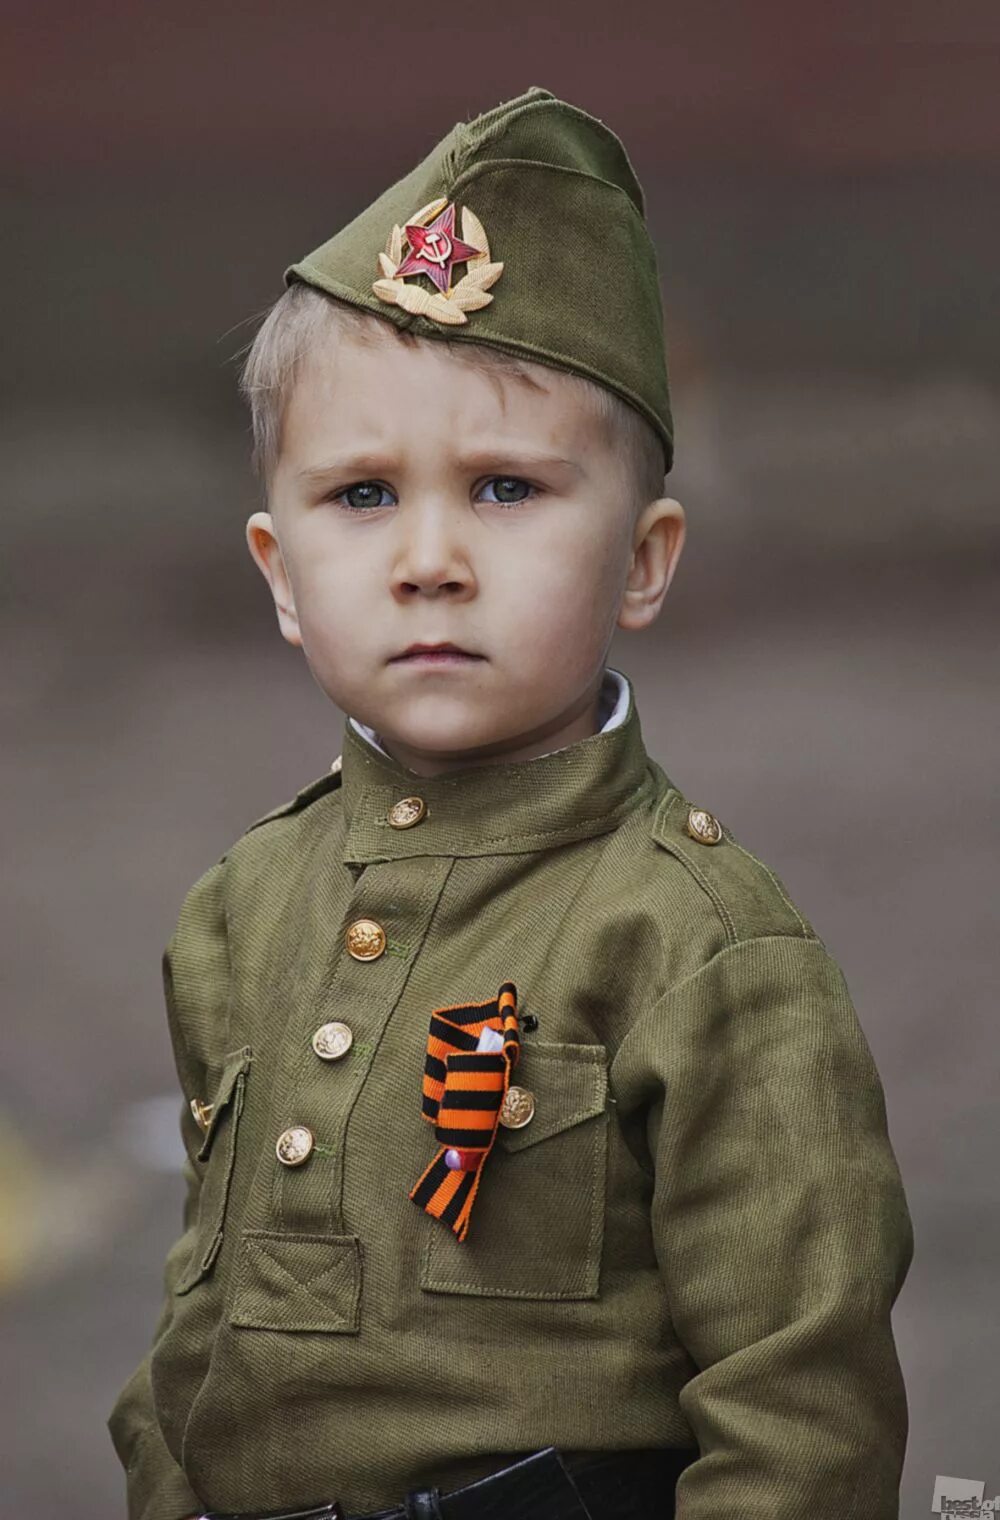 Дети в военной форме. Мальчик в военной форме. Детская фотосессия в военной форме. Солдатская форма для детей.